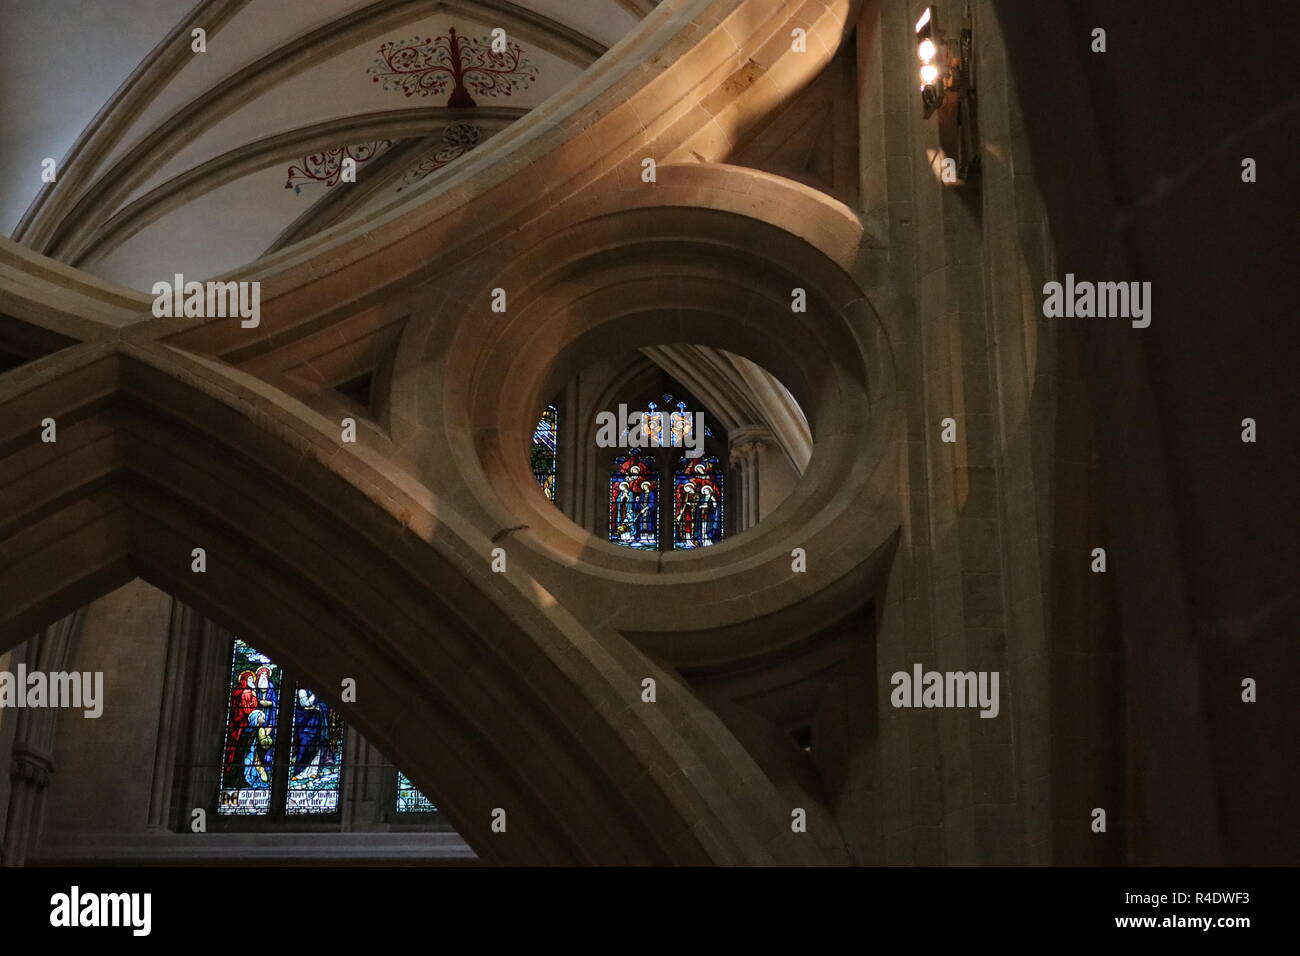 Vetrata della Cattedrale di Wells visto attraverso il meccanismo a forbice arch tenendo premuto fino al tetto. Cattedrale di Wells, pozzi, Somerset, Inghilterra, Regno Unito. Foto Stock